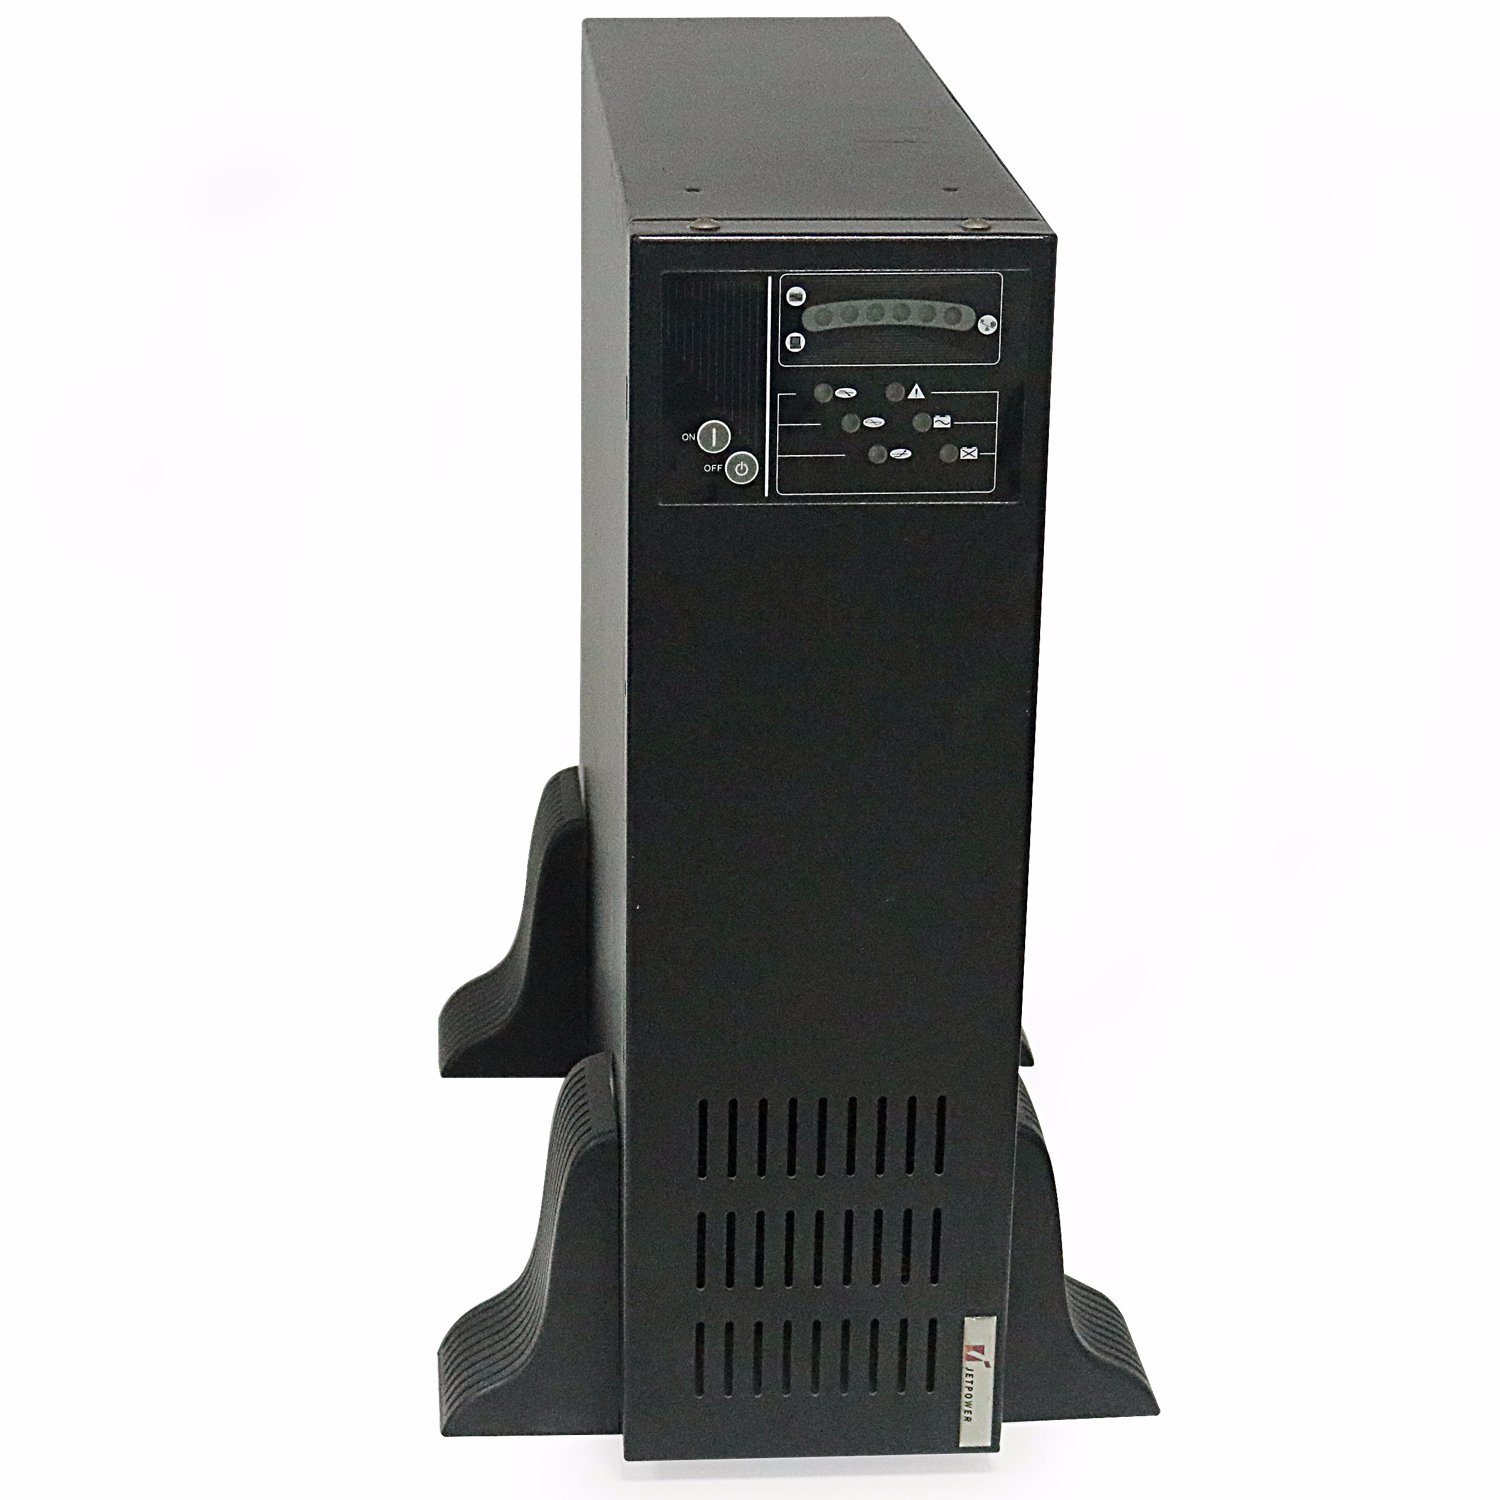 
                H-8KL 8 kVA UPS onda senoidal verdadeira Fase Única de Baixa Frequência UPS de linha interativa
            